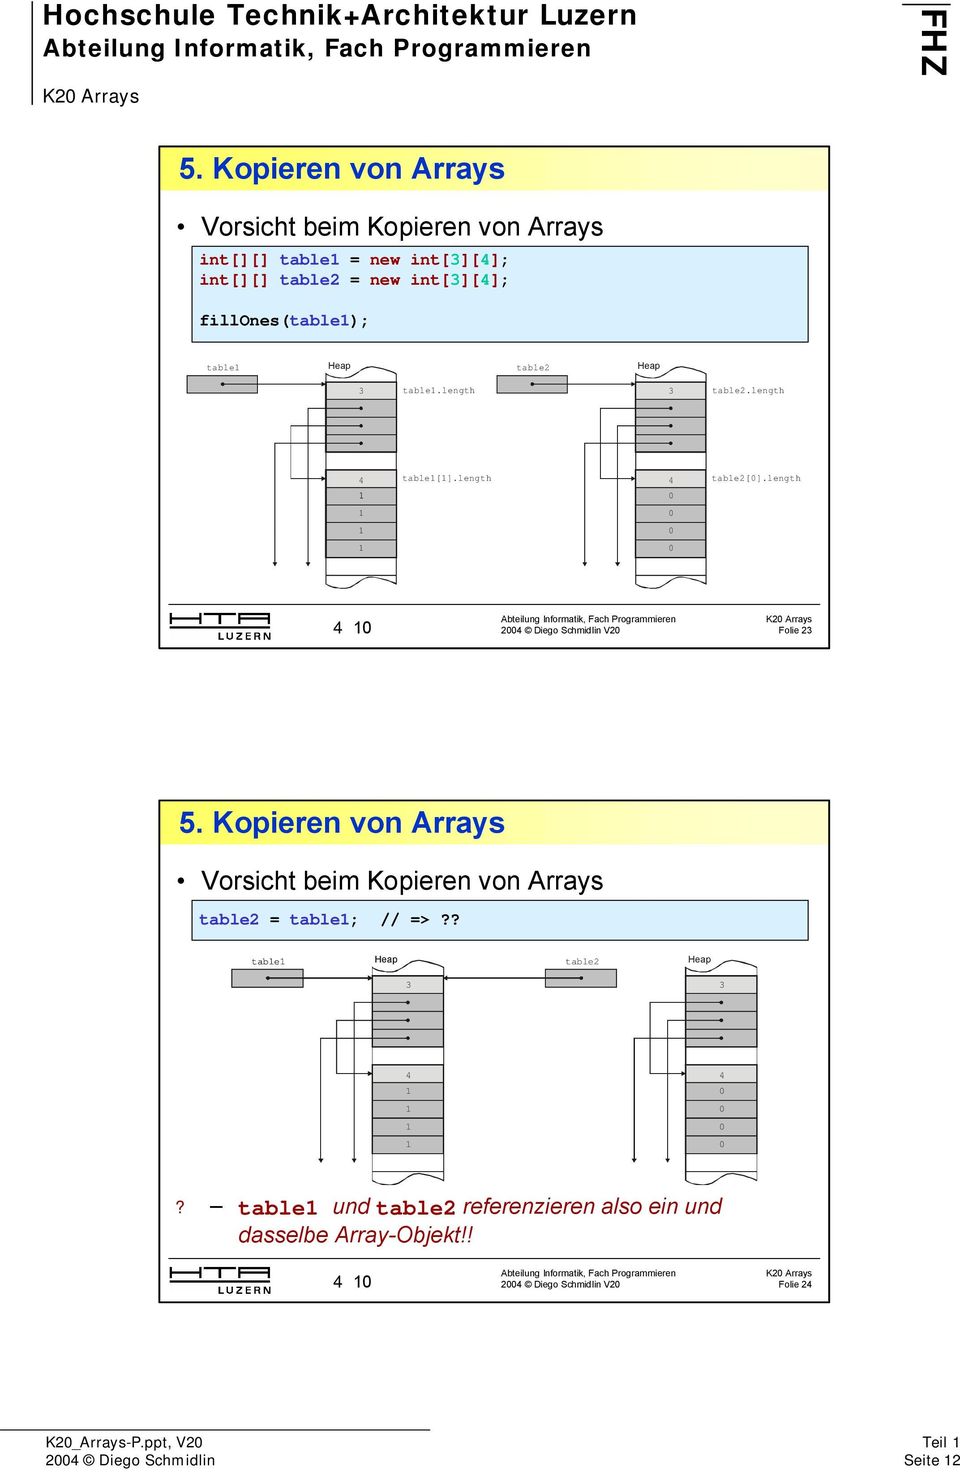 length 4 10 Folie 23 5. Kopieren von Arrays Vorsicht beim Kopieren von Arrays table2 = table1; // =>?